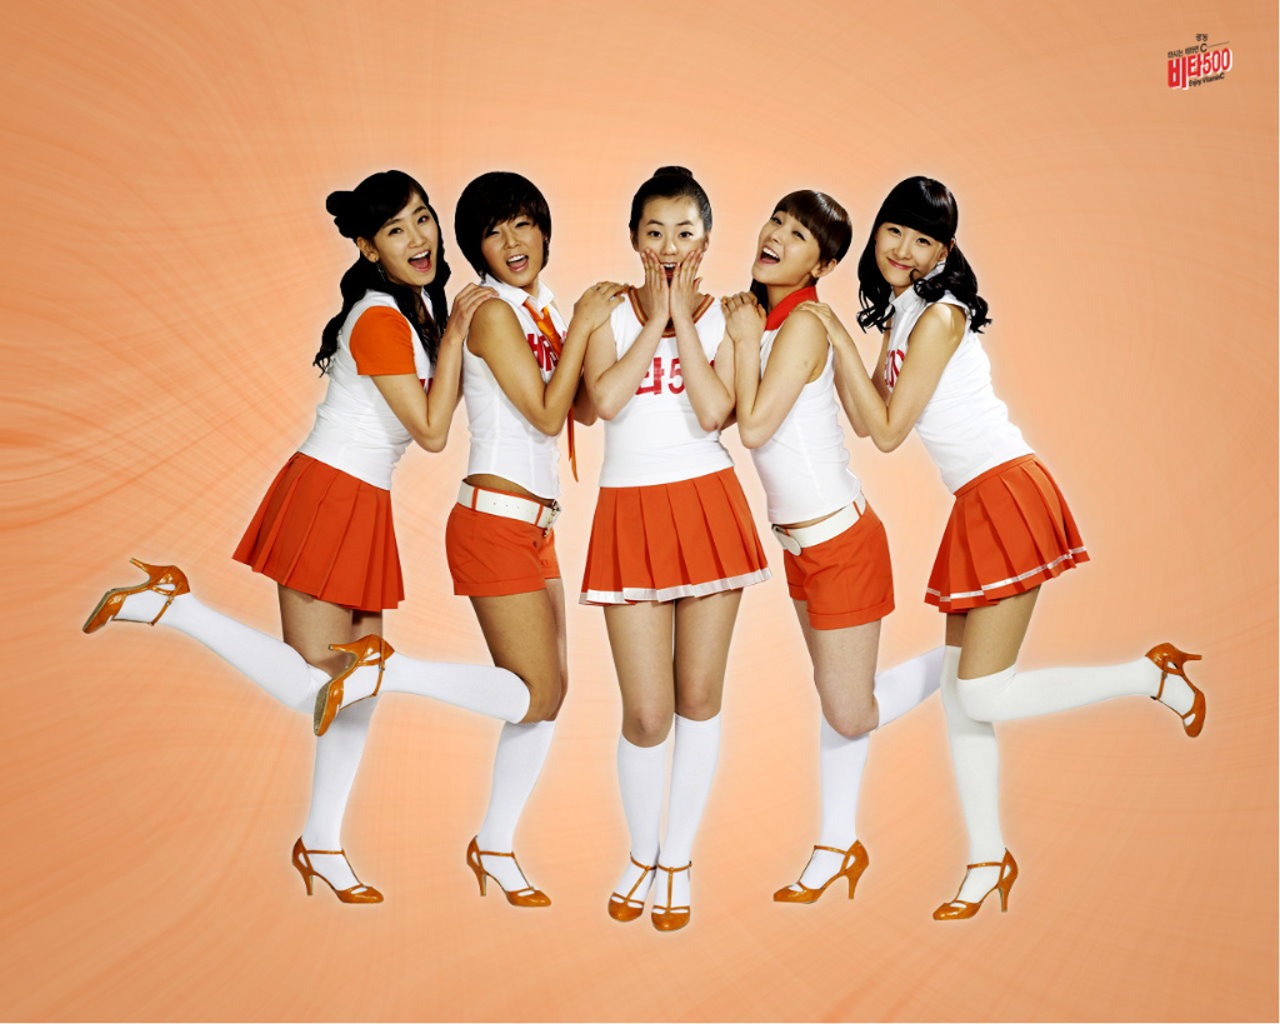 Wonder Girls cartera de belleza coreano #12 - 1280x1024